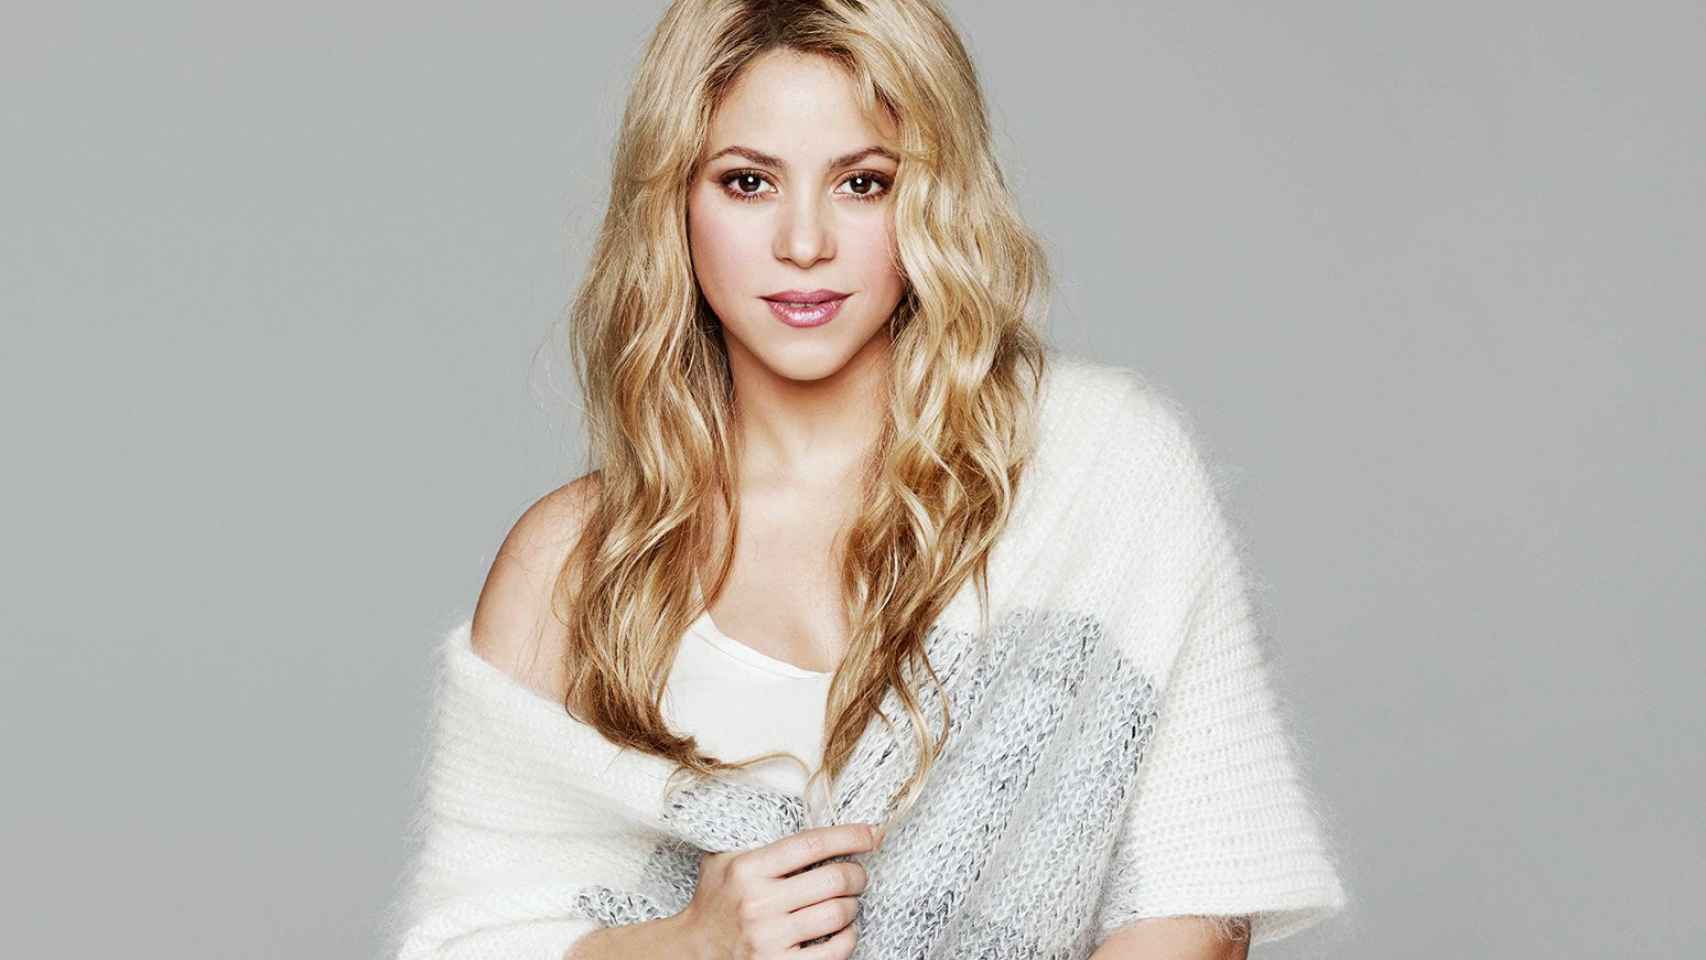 Shakira planta cara a los terroristas: No podemos complacer a quienes quieren sembrar el miedo